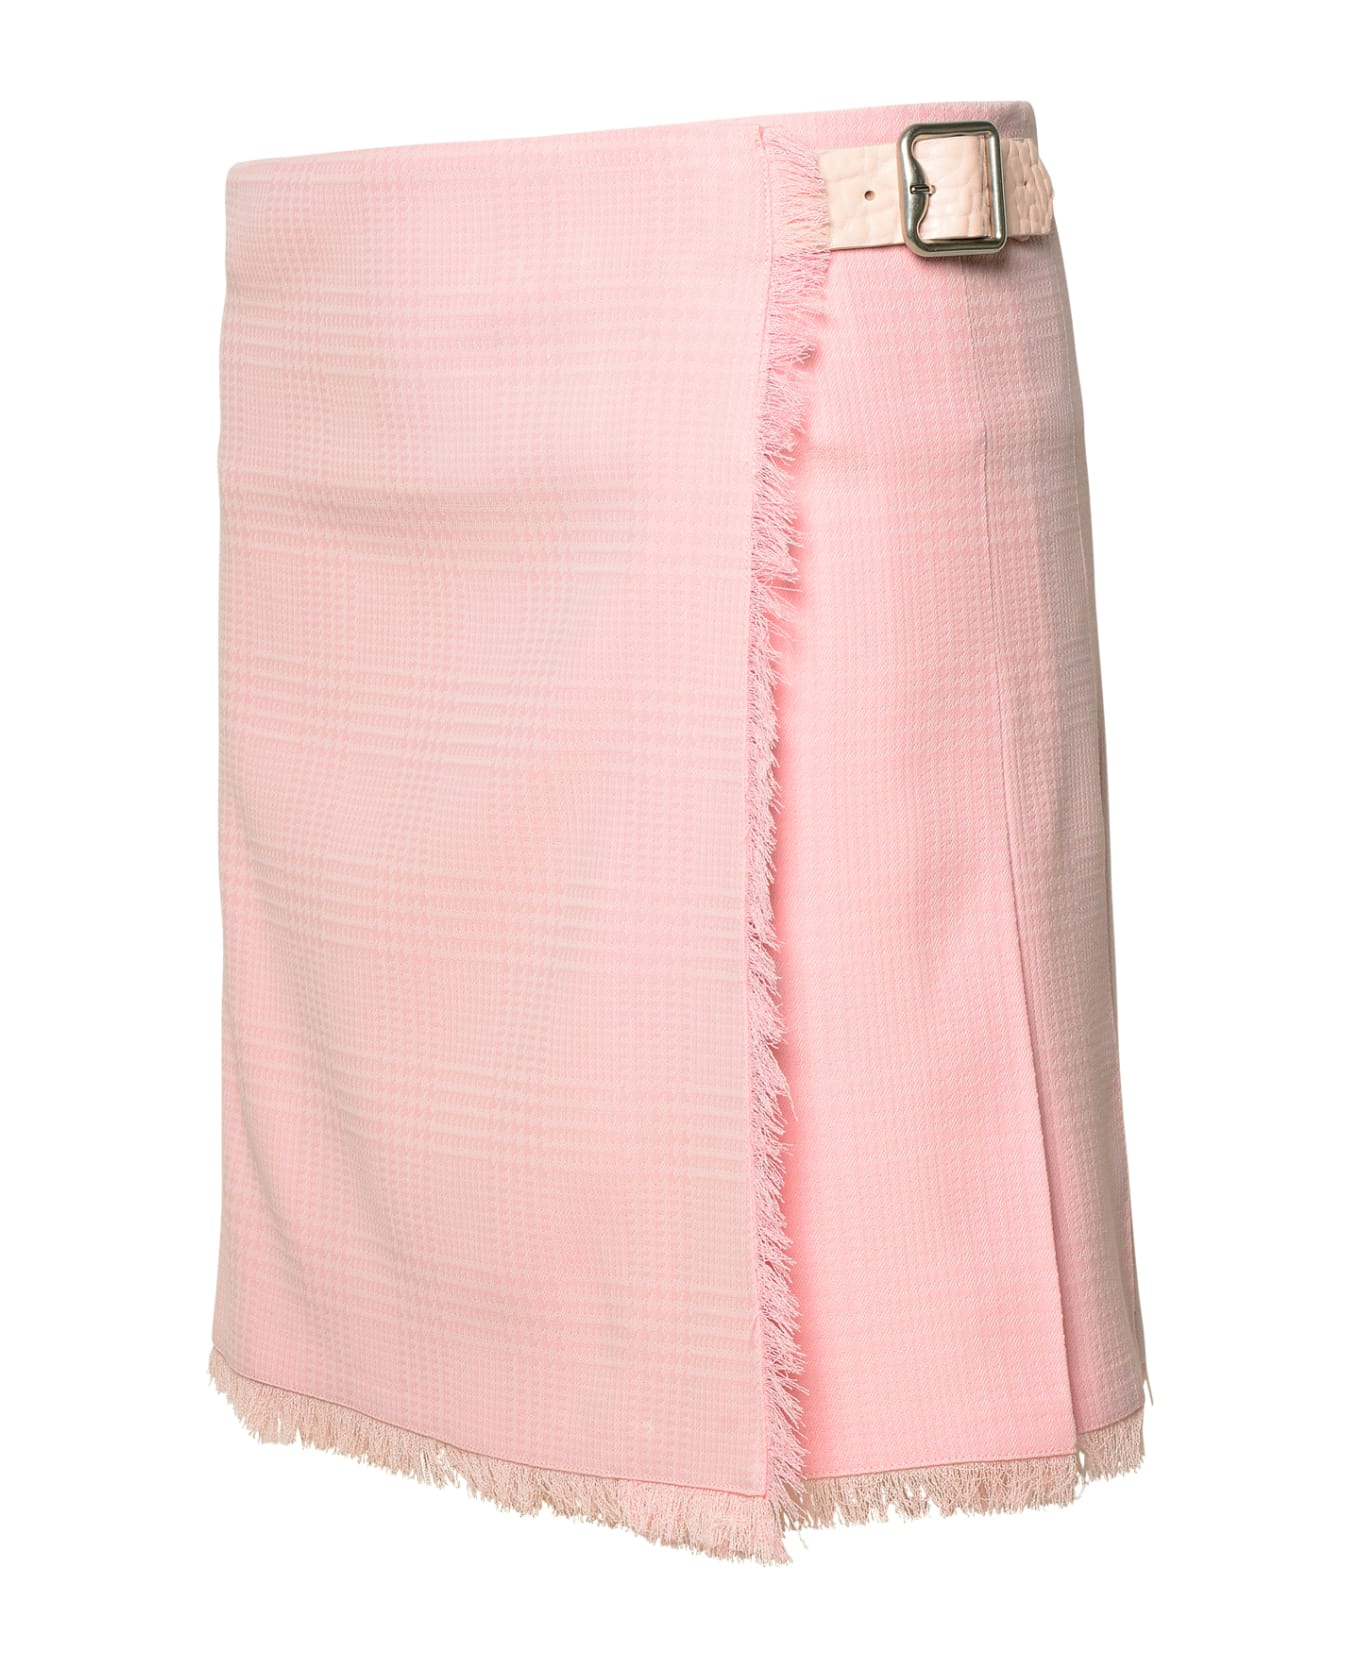 Burberry Pink Virgin Wool Miniskirt - Cameo